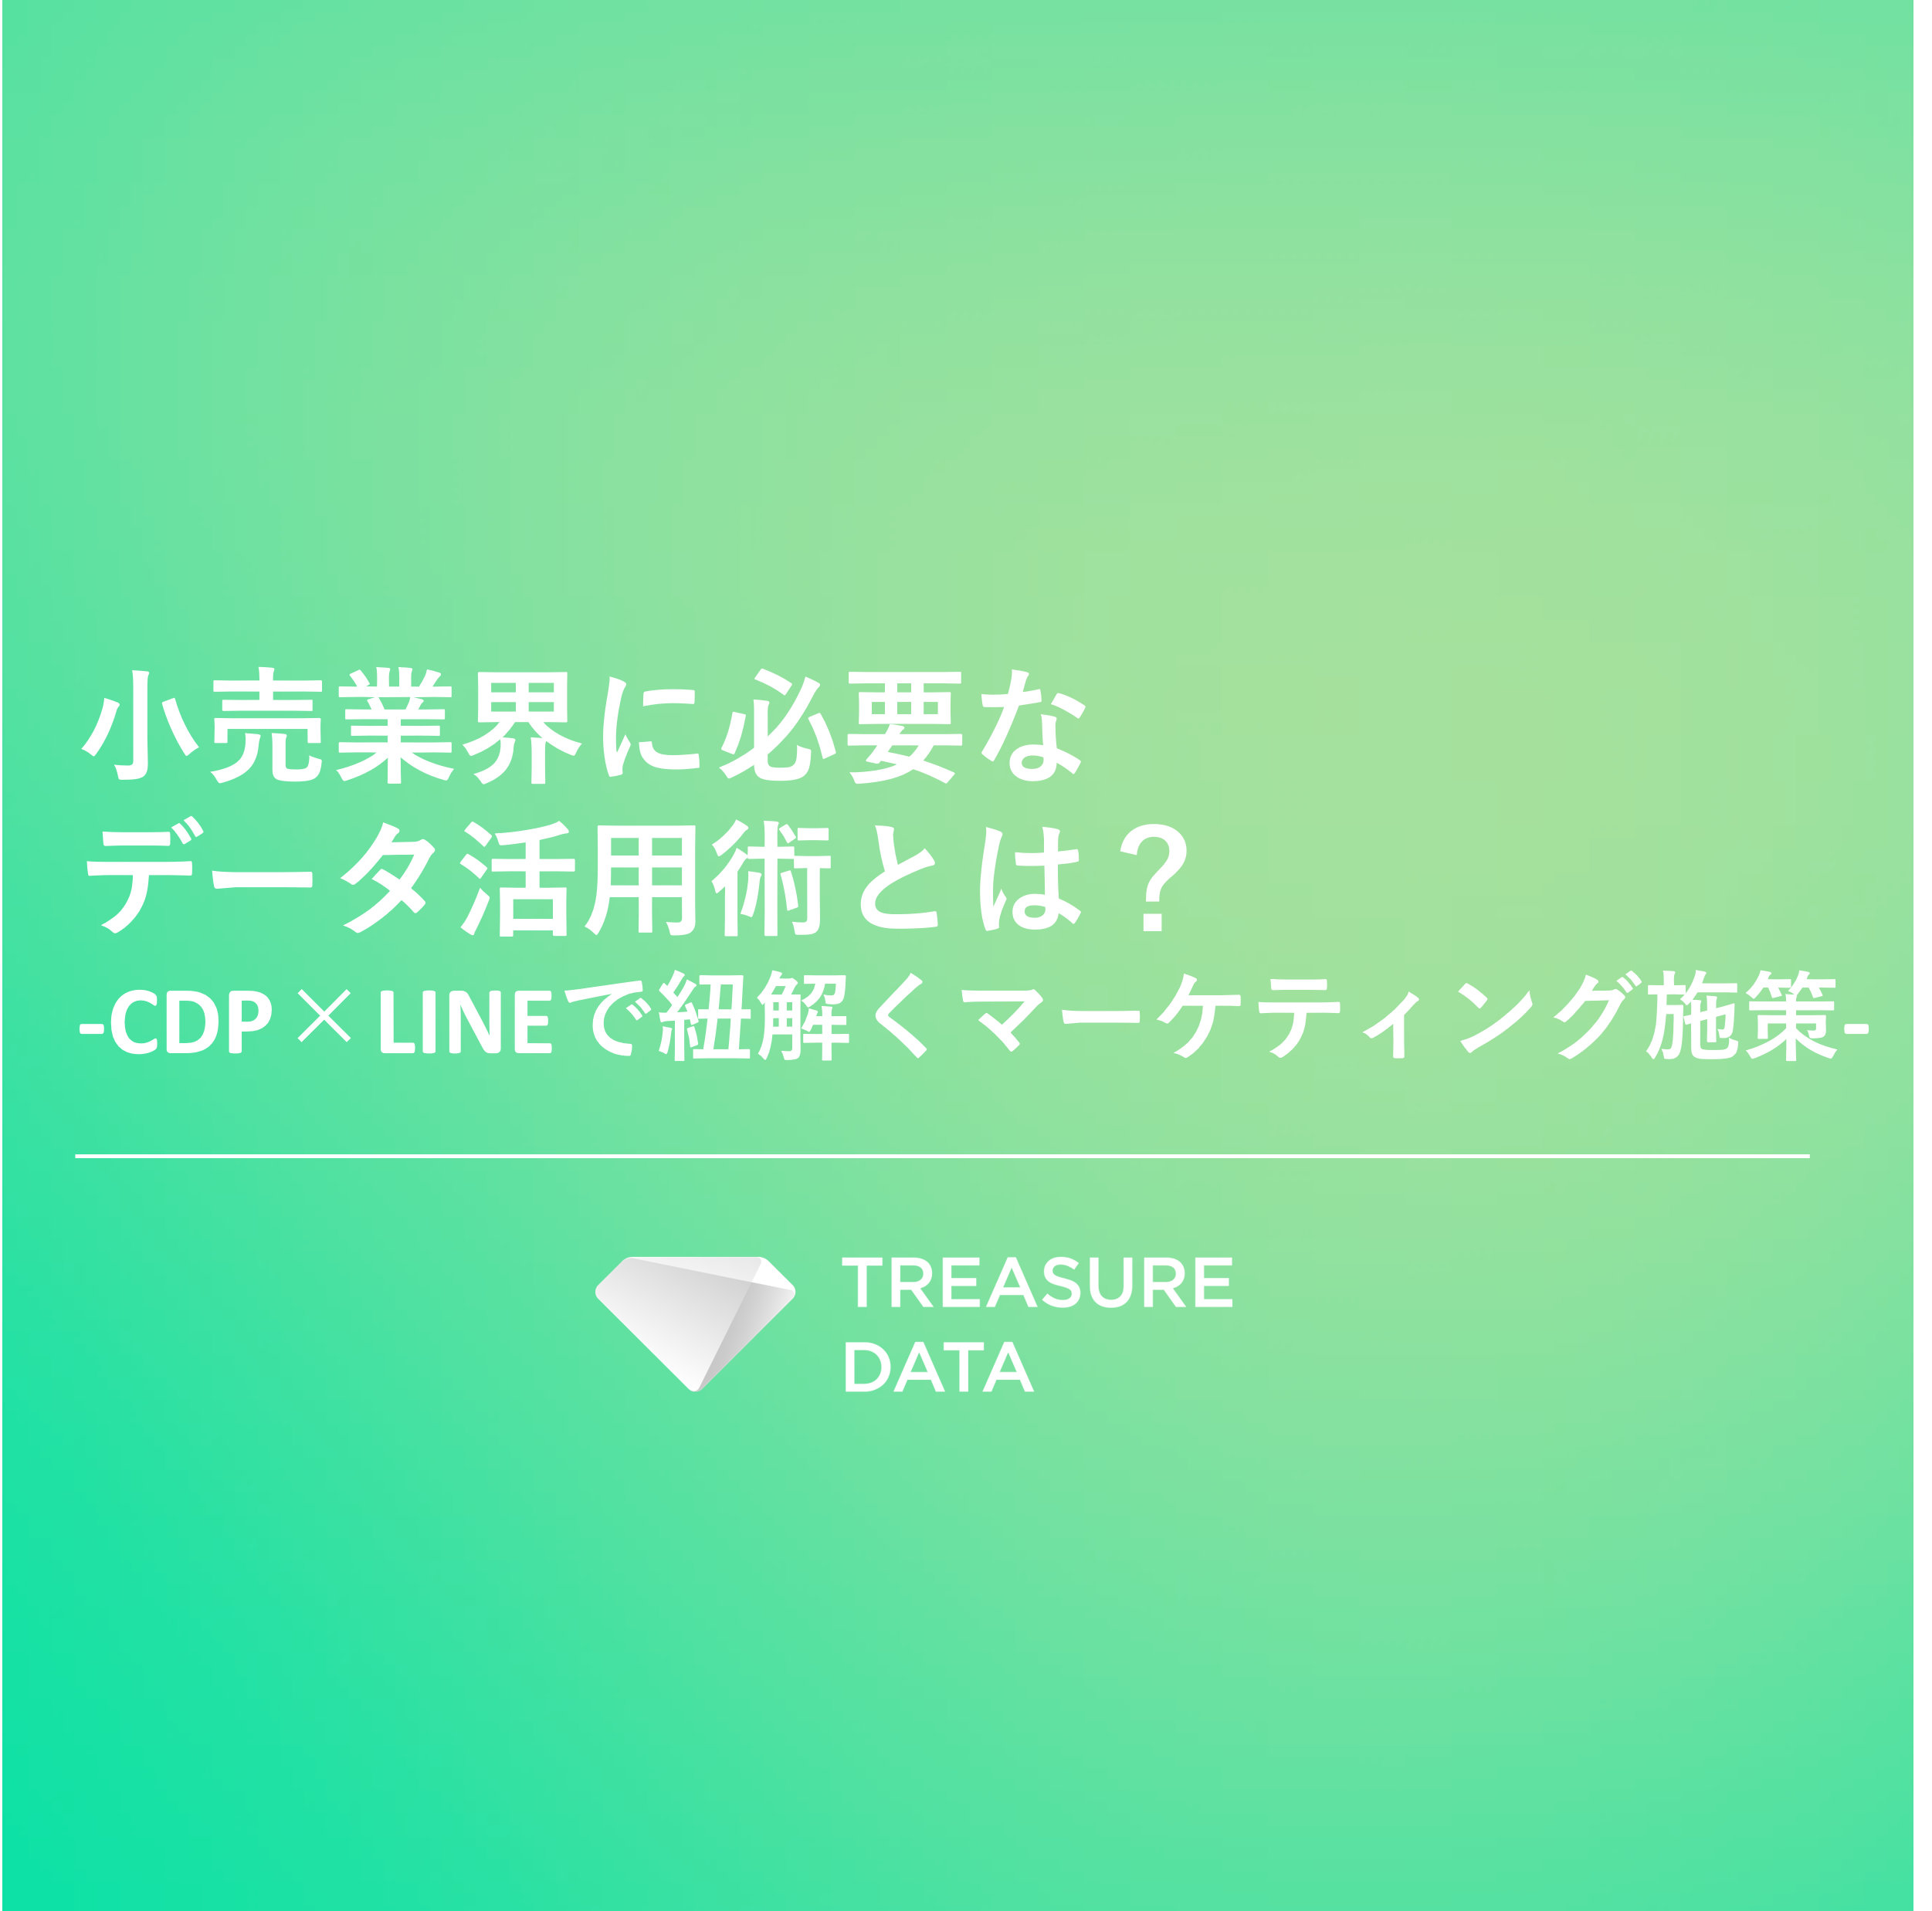 CDP_DL資料サムネ_小売業界